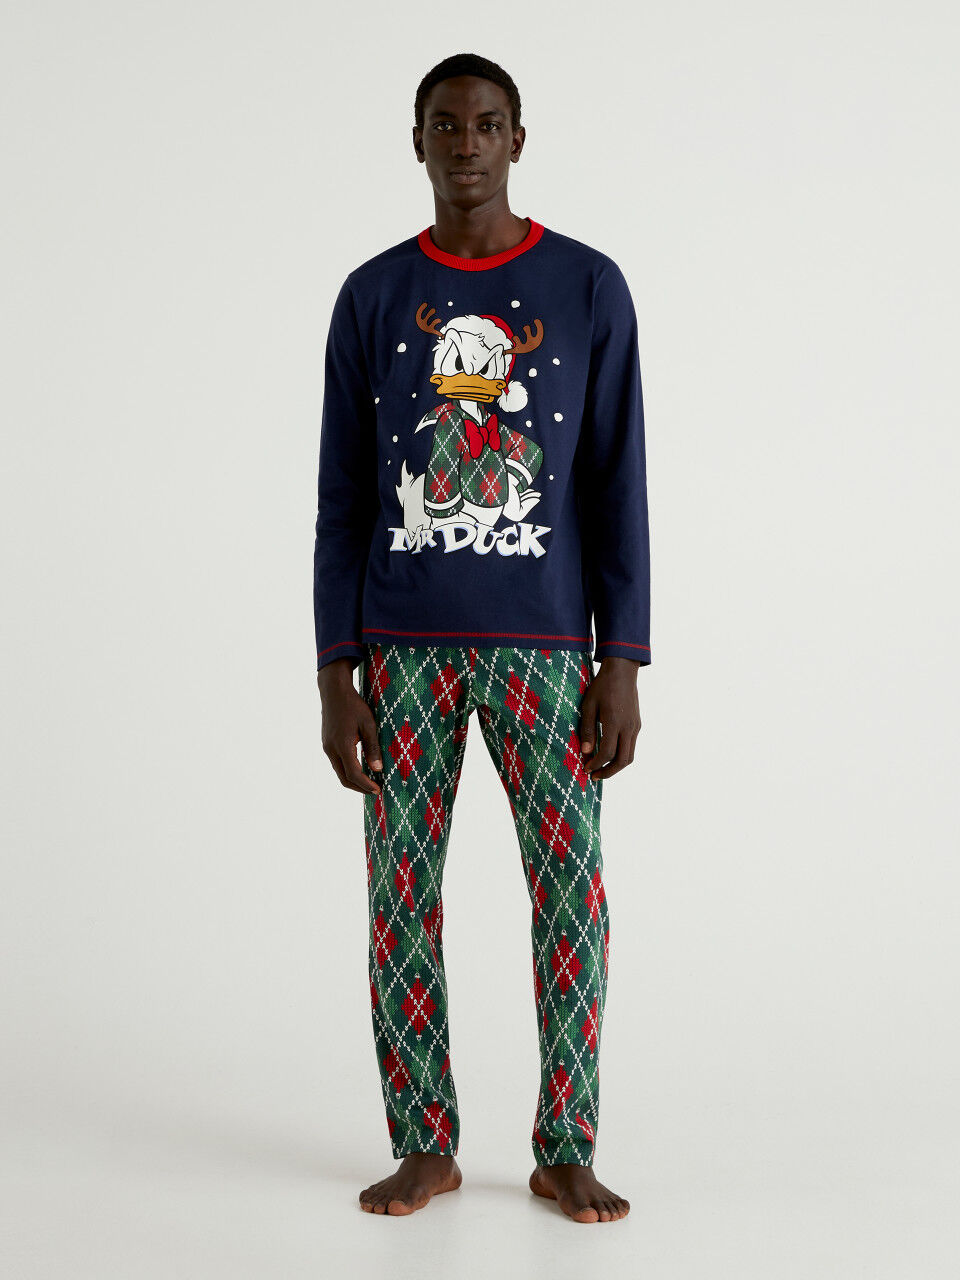 Weihnachtlicher Pyjama mit Donald Duck